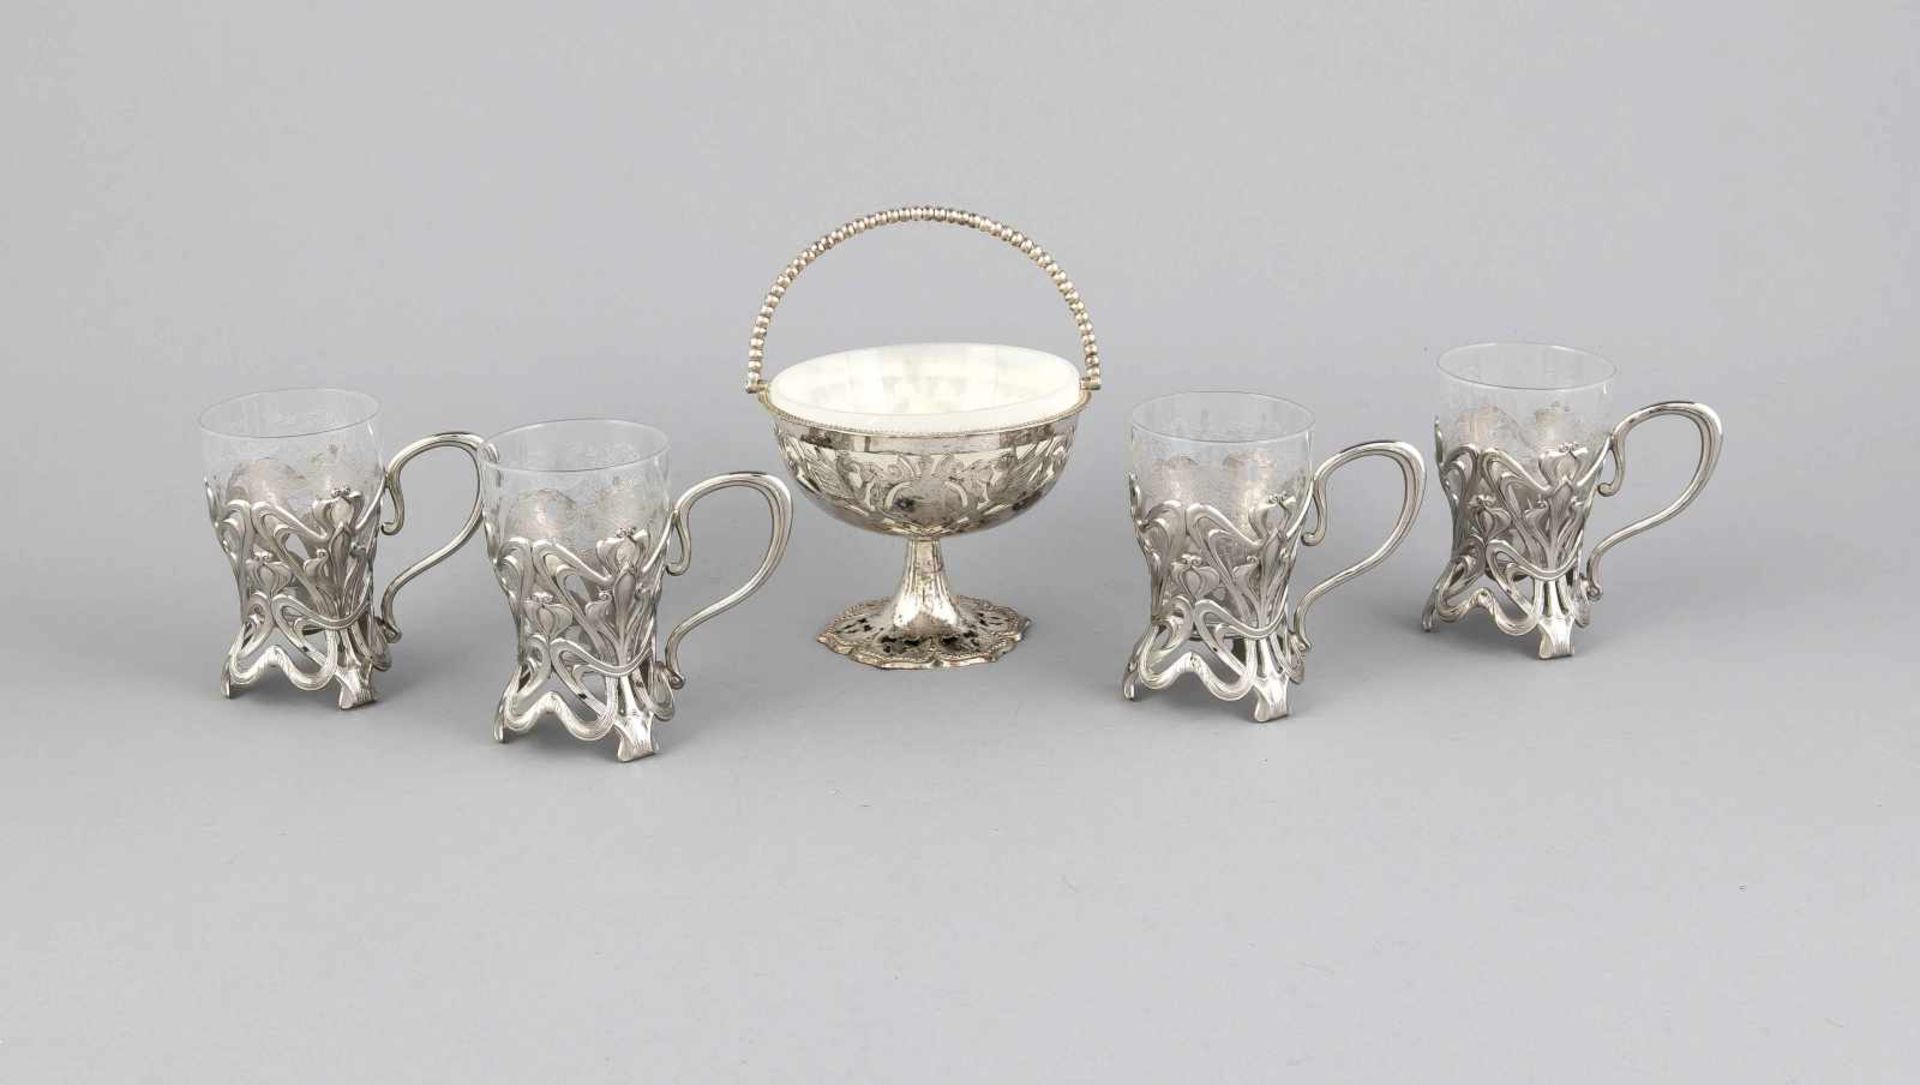 Vier Jugendstil-Teeglashalter, um 1900, plated, auf 3 Füßen, reich durchbrochen gearbeitet, seitl.